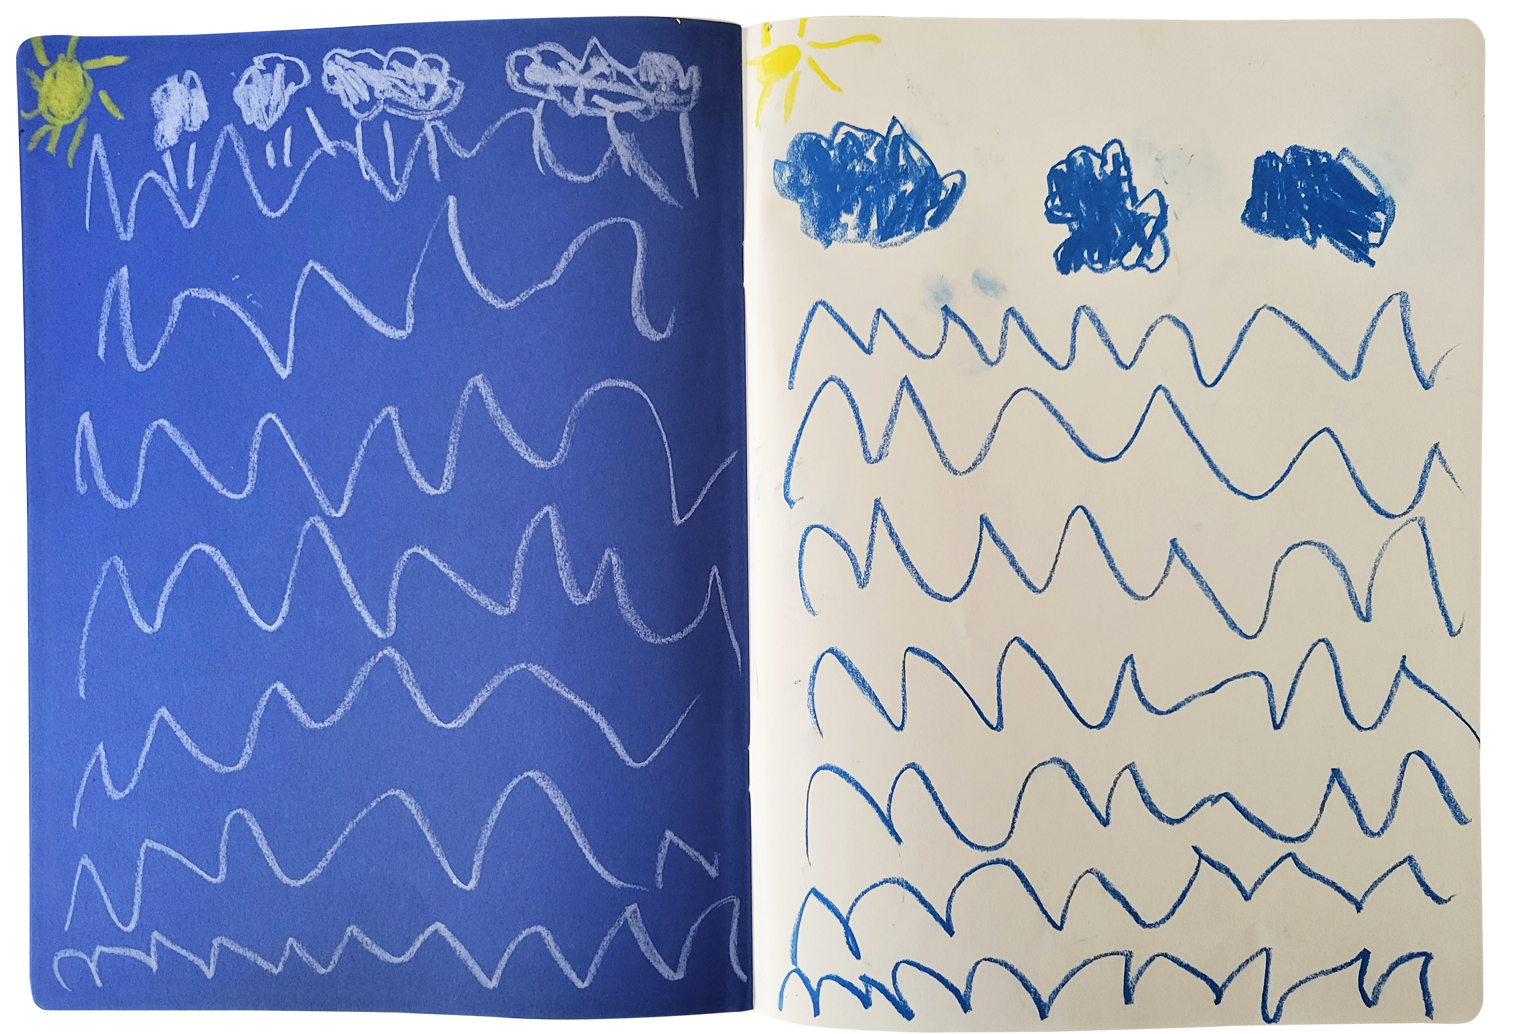 מחזור המים בטבע – צייר והסביר הלל בן 5.3